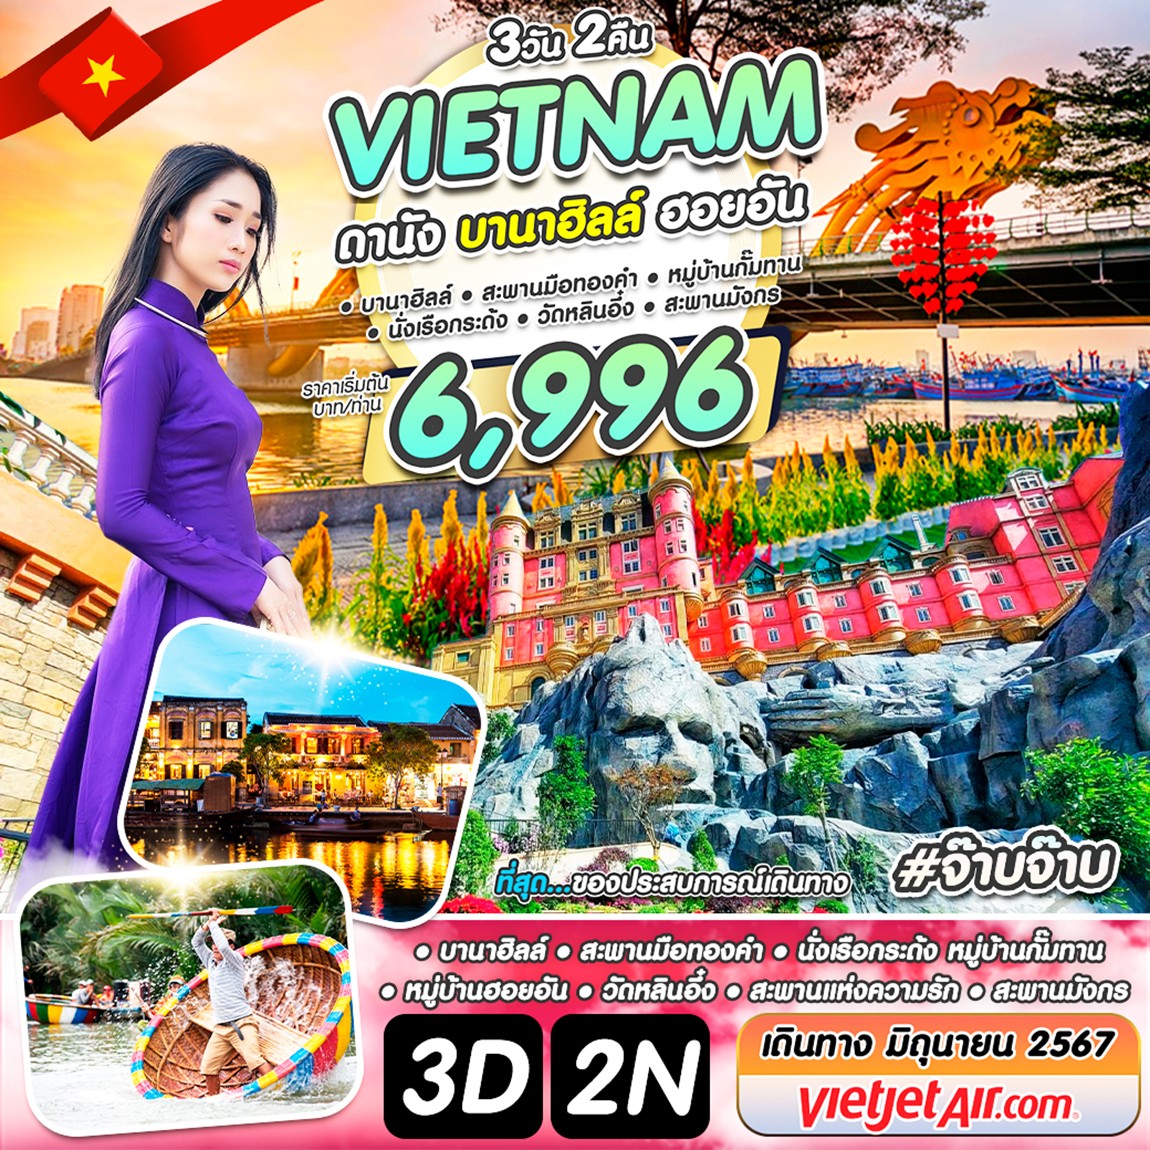 เวียดนาม ดานัง บานาฮิลล์ ฮอยอัน #จ๊าบจ๊าบ 3 วัน 2 คืน มิ.ย. 67 by Vietjet Air